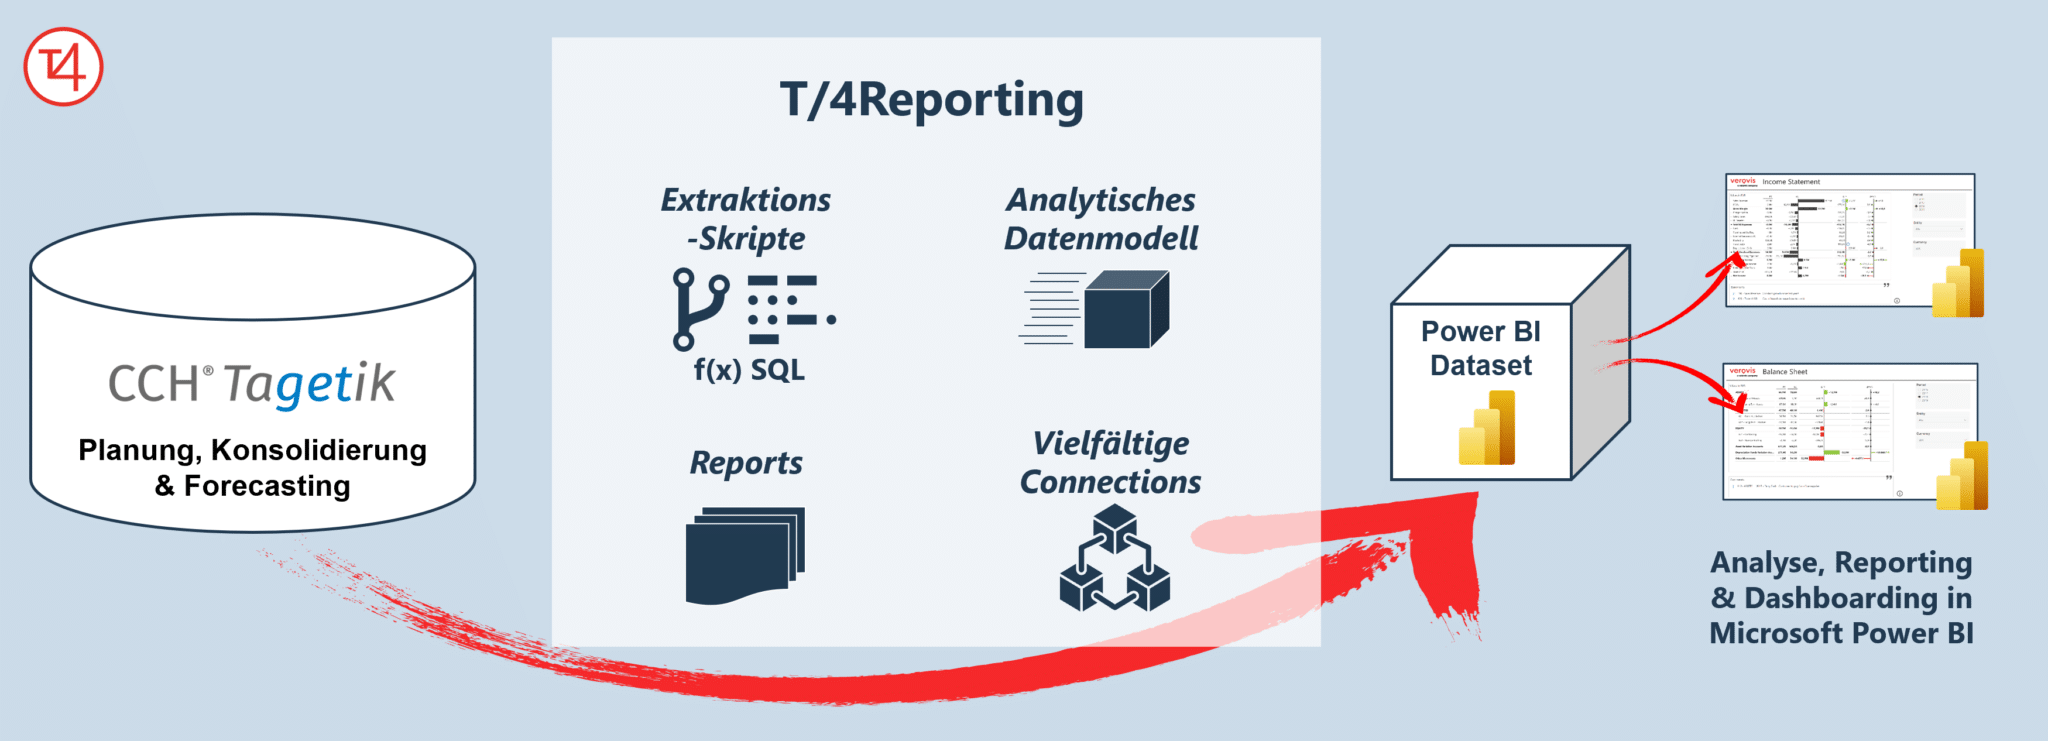 T4/Reporting – Die progressive Integrationslösung zwischen CCH Tagetik und MS Power BI 